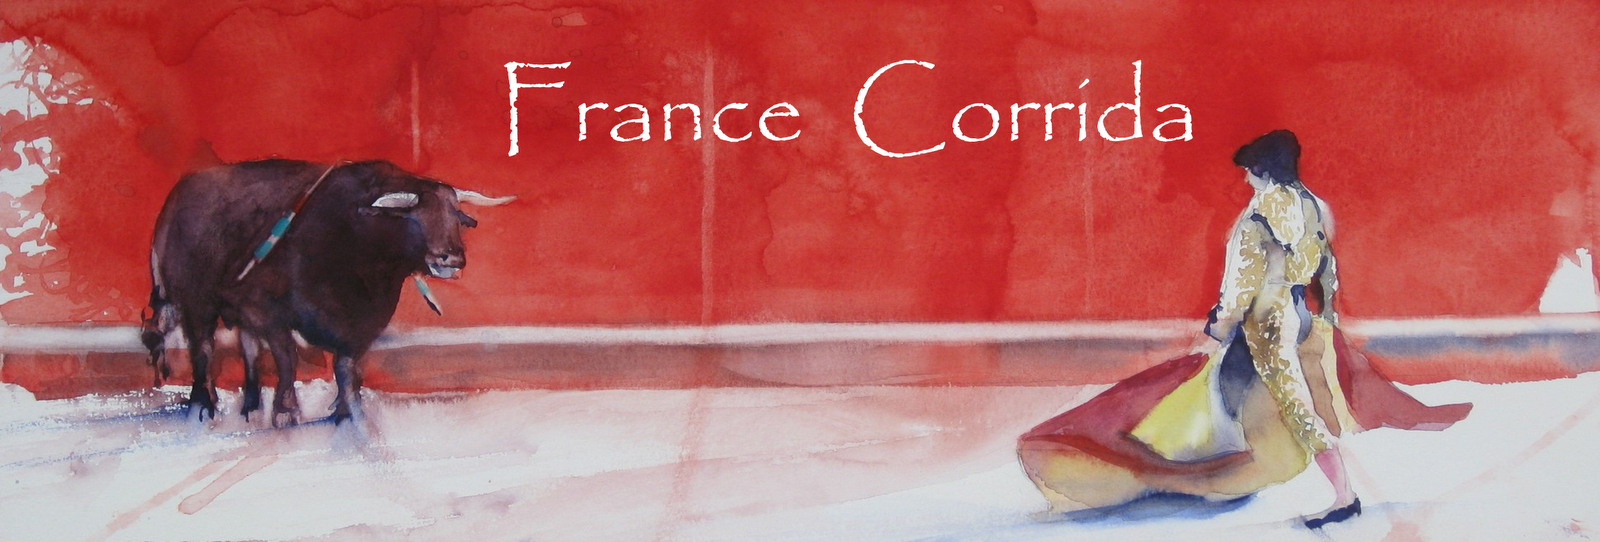 France Corrida : règles de la tauromachie, art et passion dans l'arène      aficionados